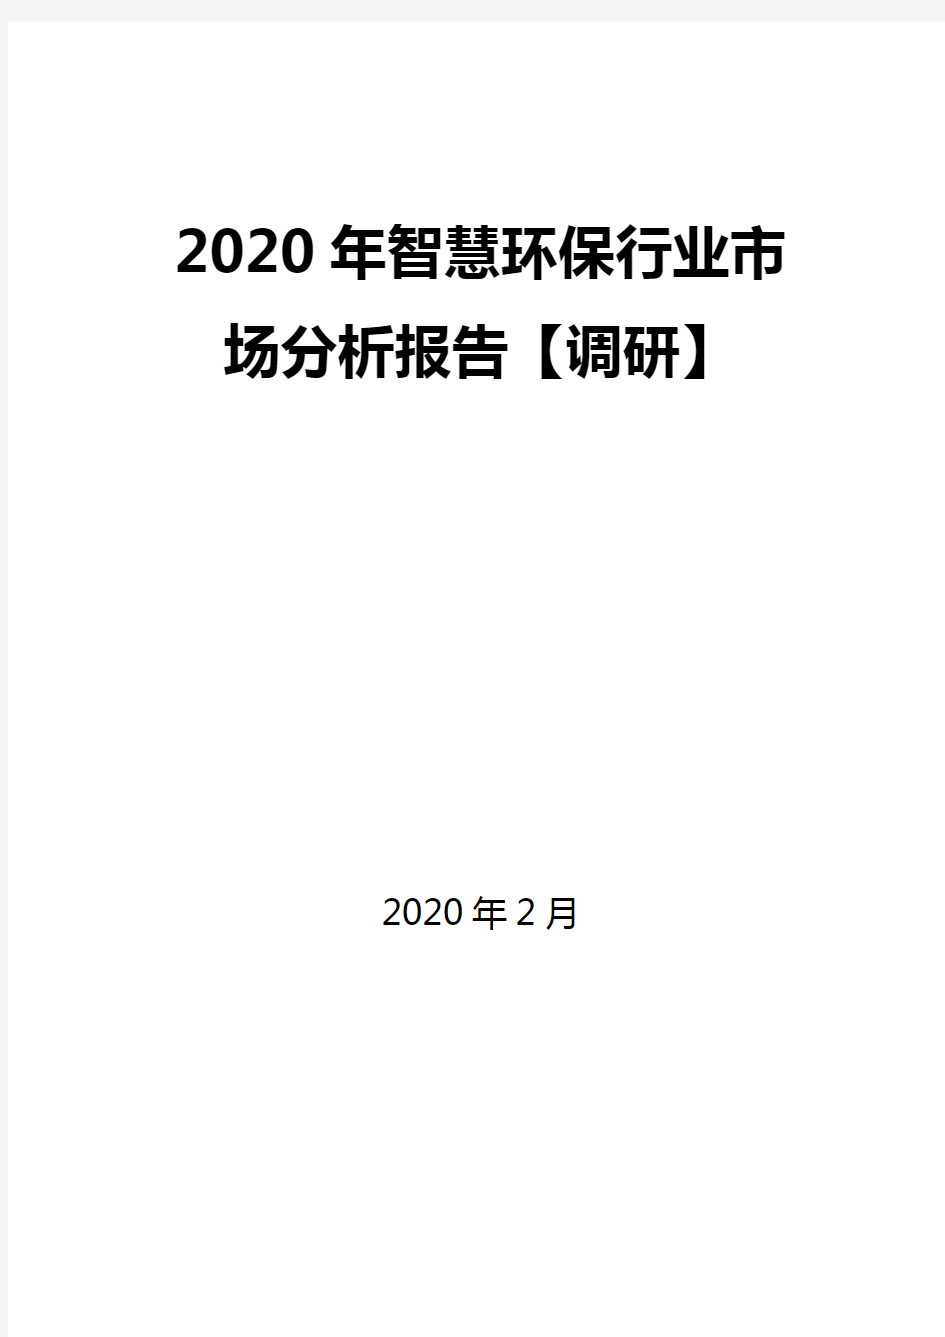 2020年智慧环保行业市场分析报告【调研】